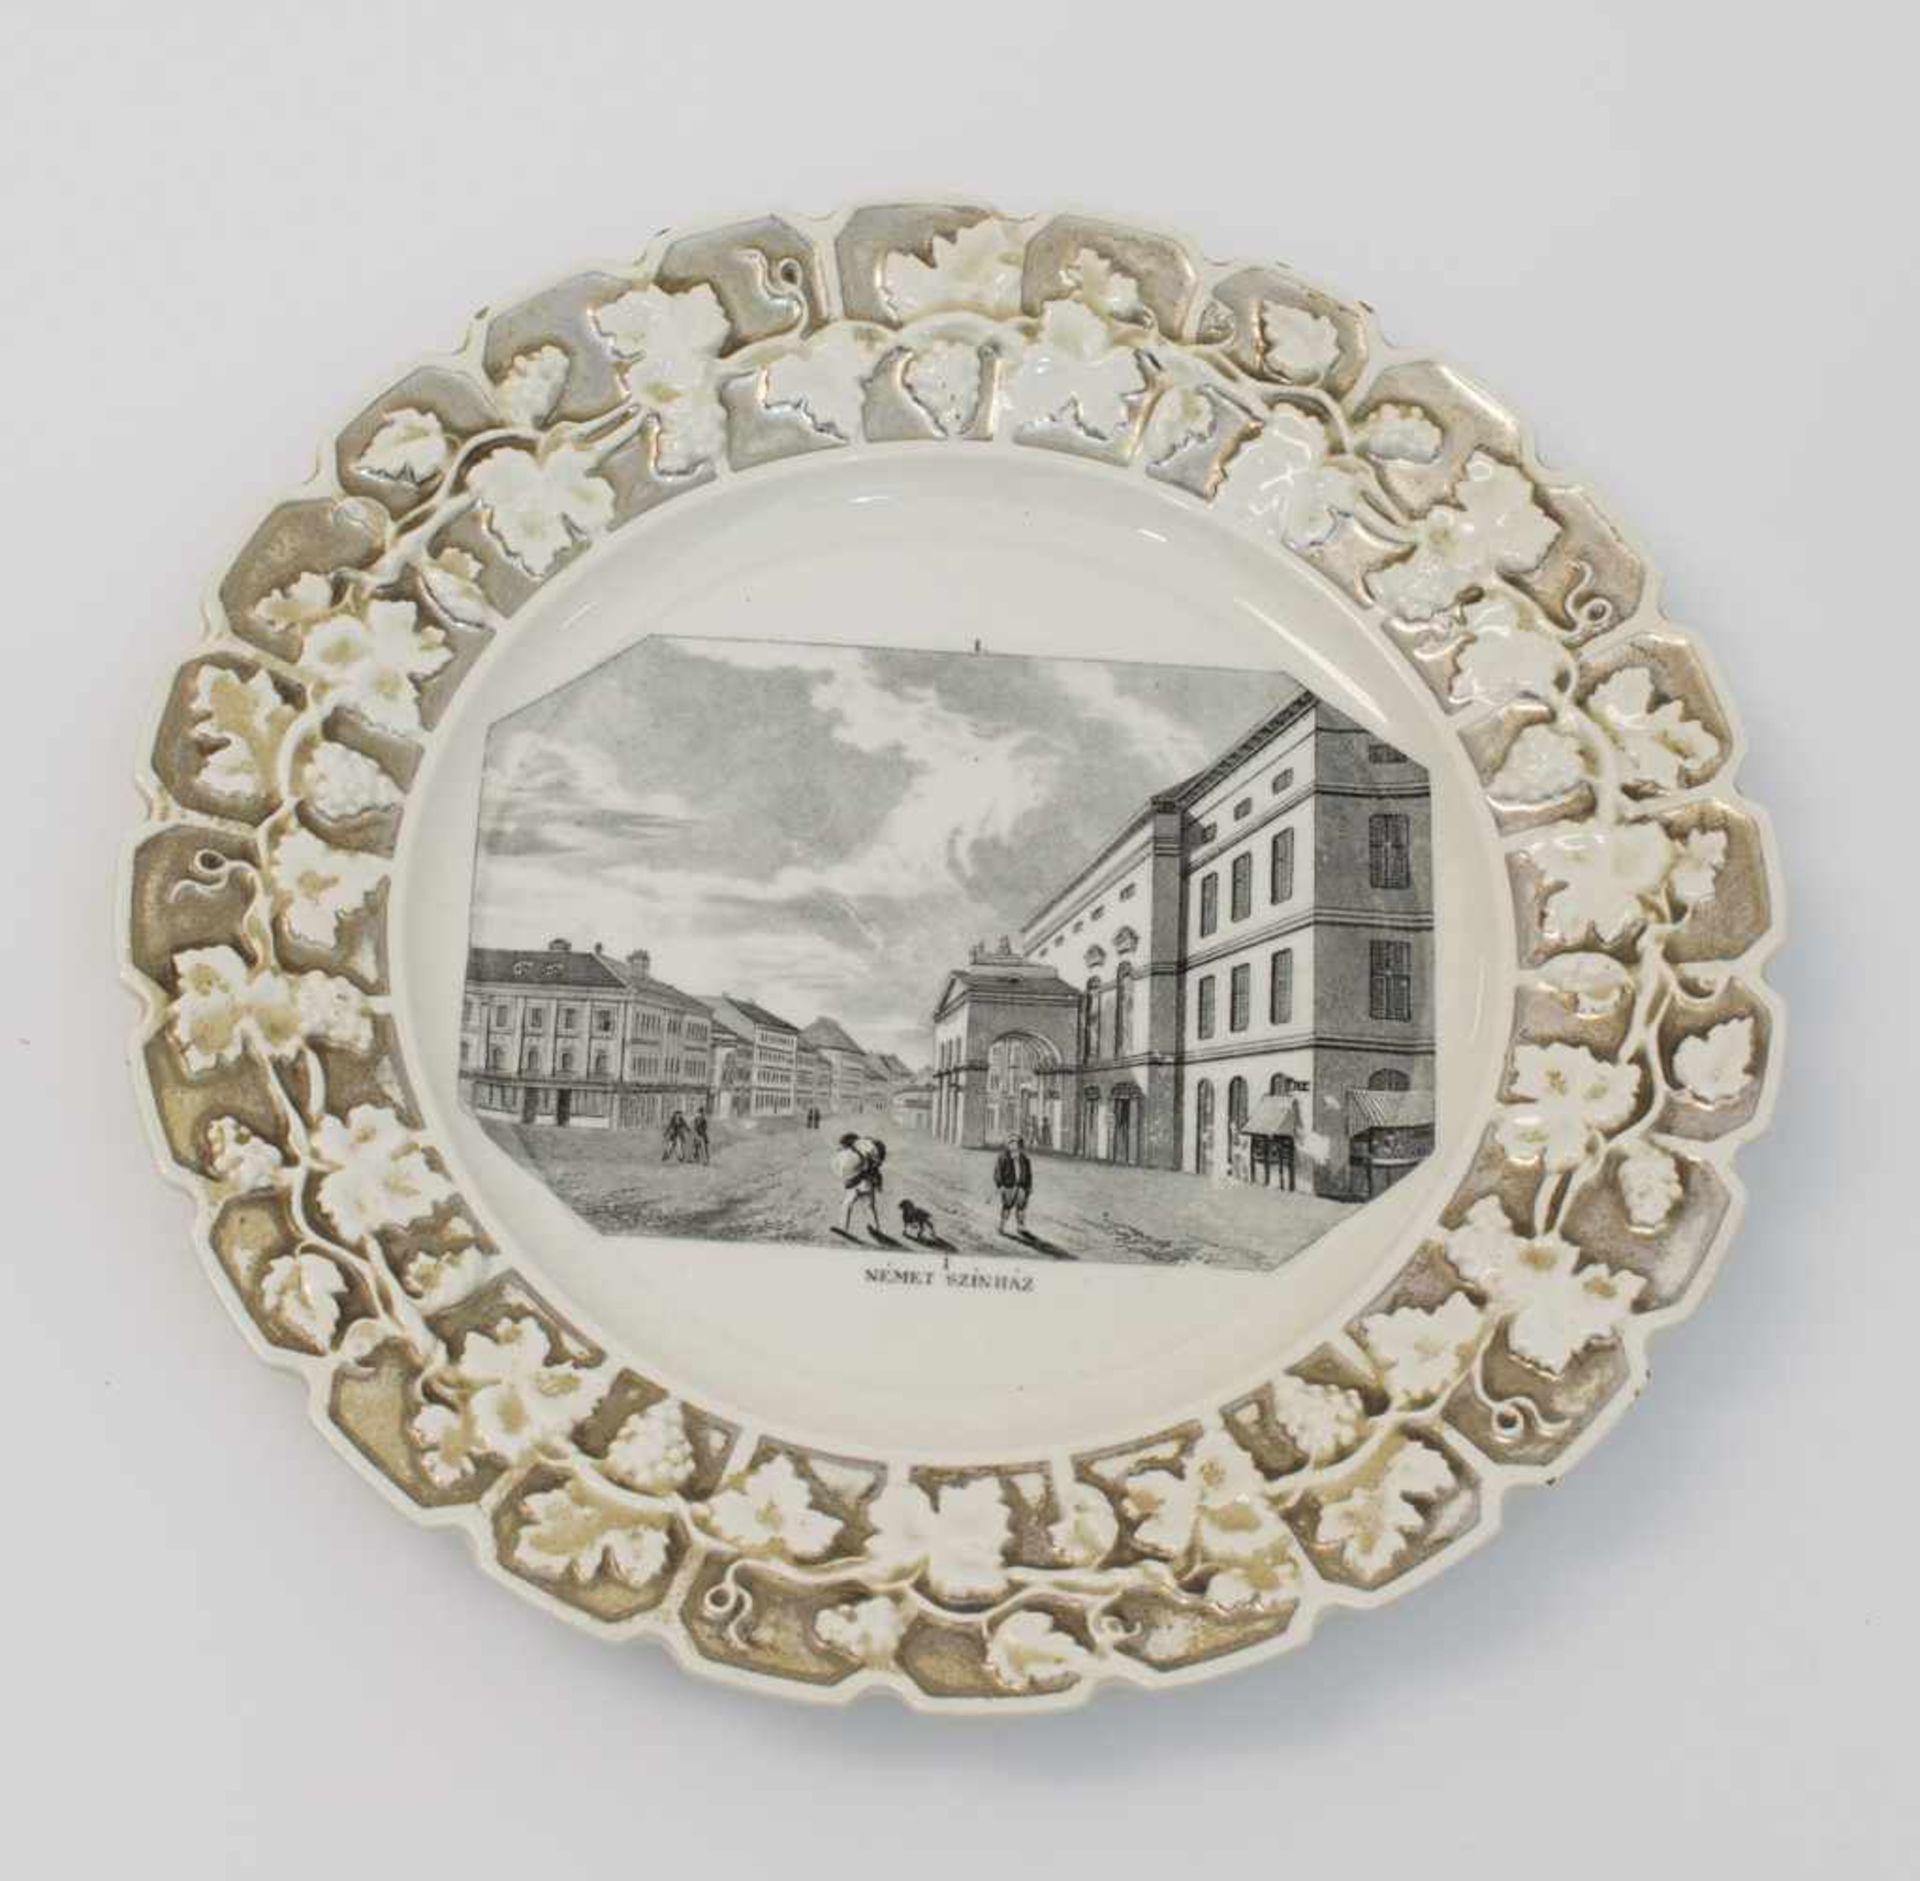 Ansichten Teller um 1840, Weißporzellan mit reliefierter Fahne, Kupferdruckdekor des "Német szinhàz"